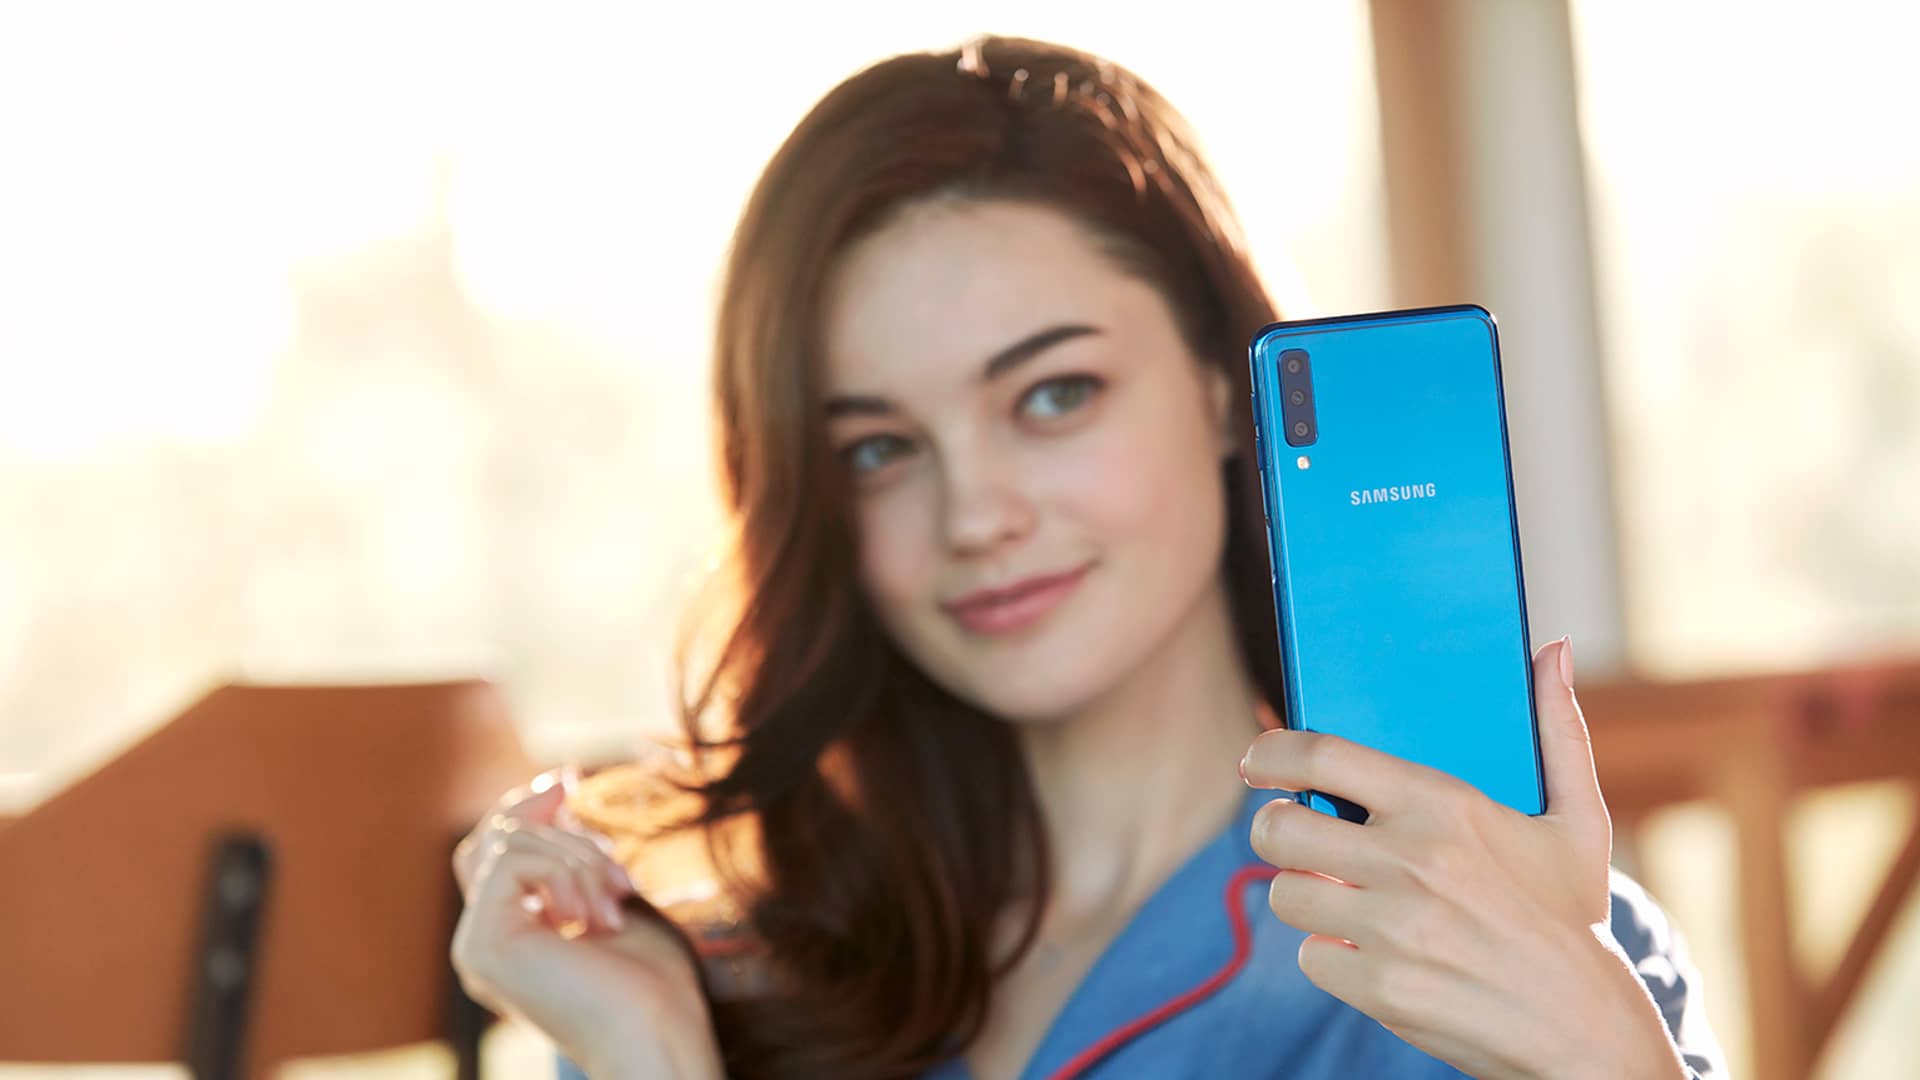 Mujer realizando una videollamada con su nuevo Samsung Galaxy A7, disponible en yoigo